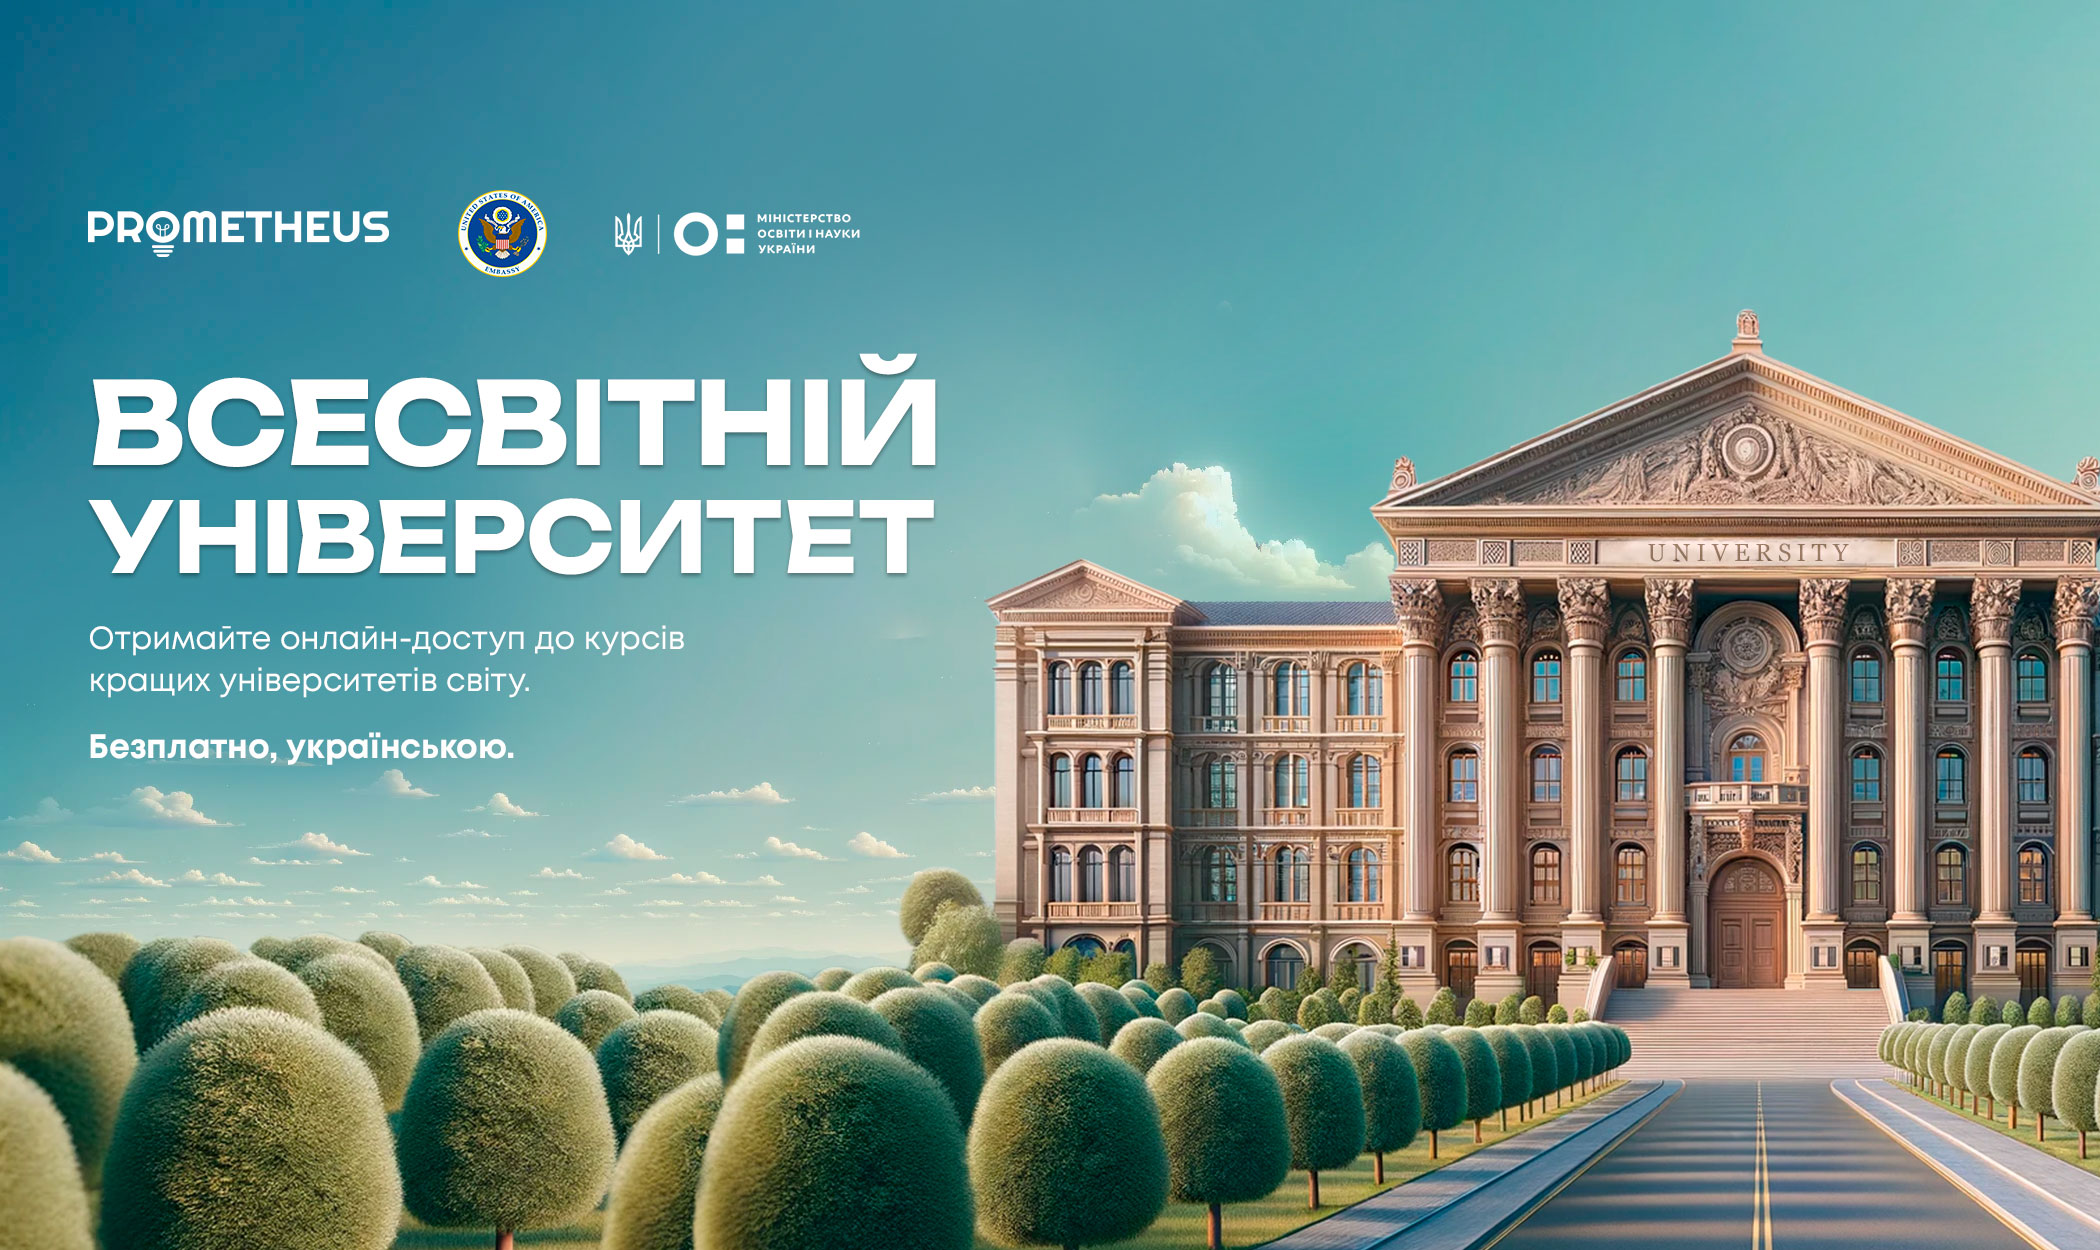 Prometheus перекладе українською 50 онлайн-курсів провідних світових університетів